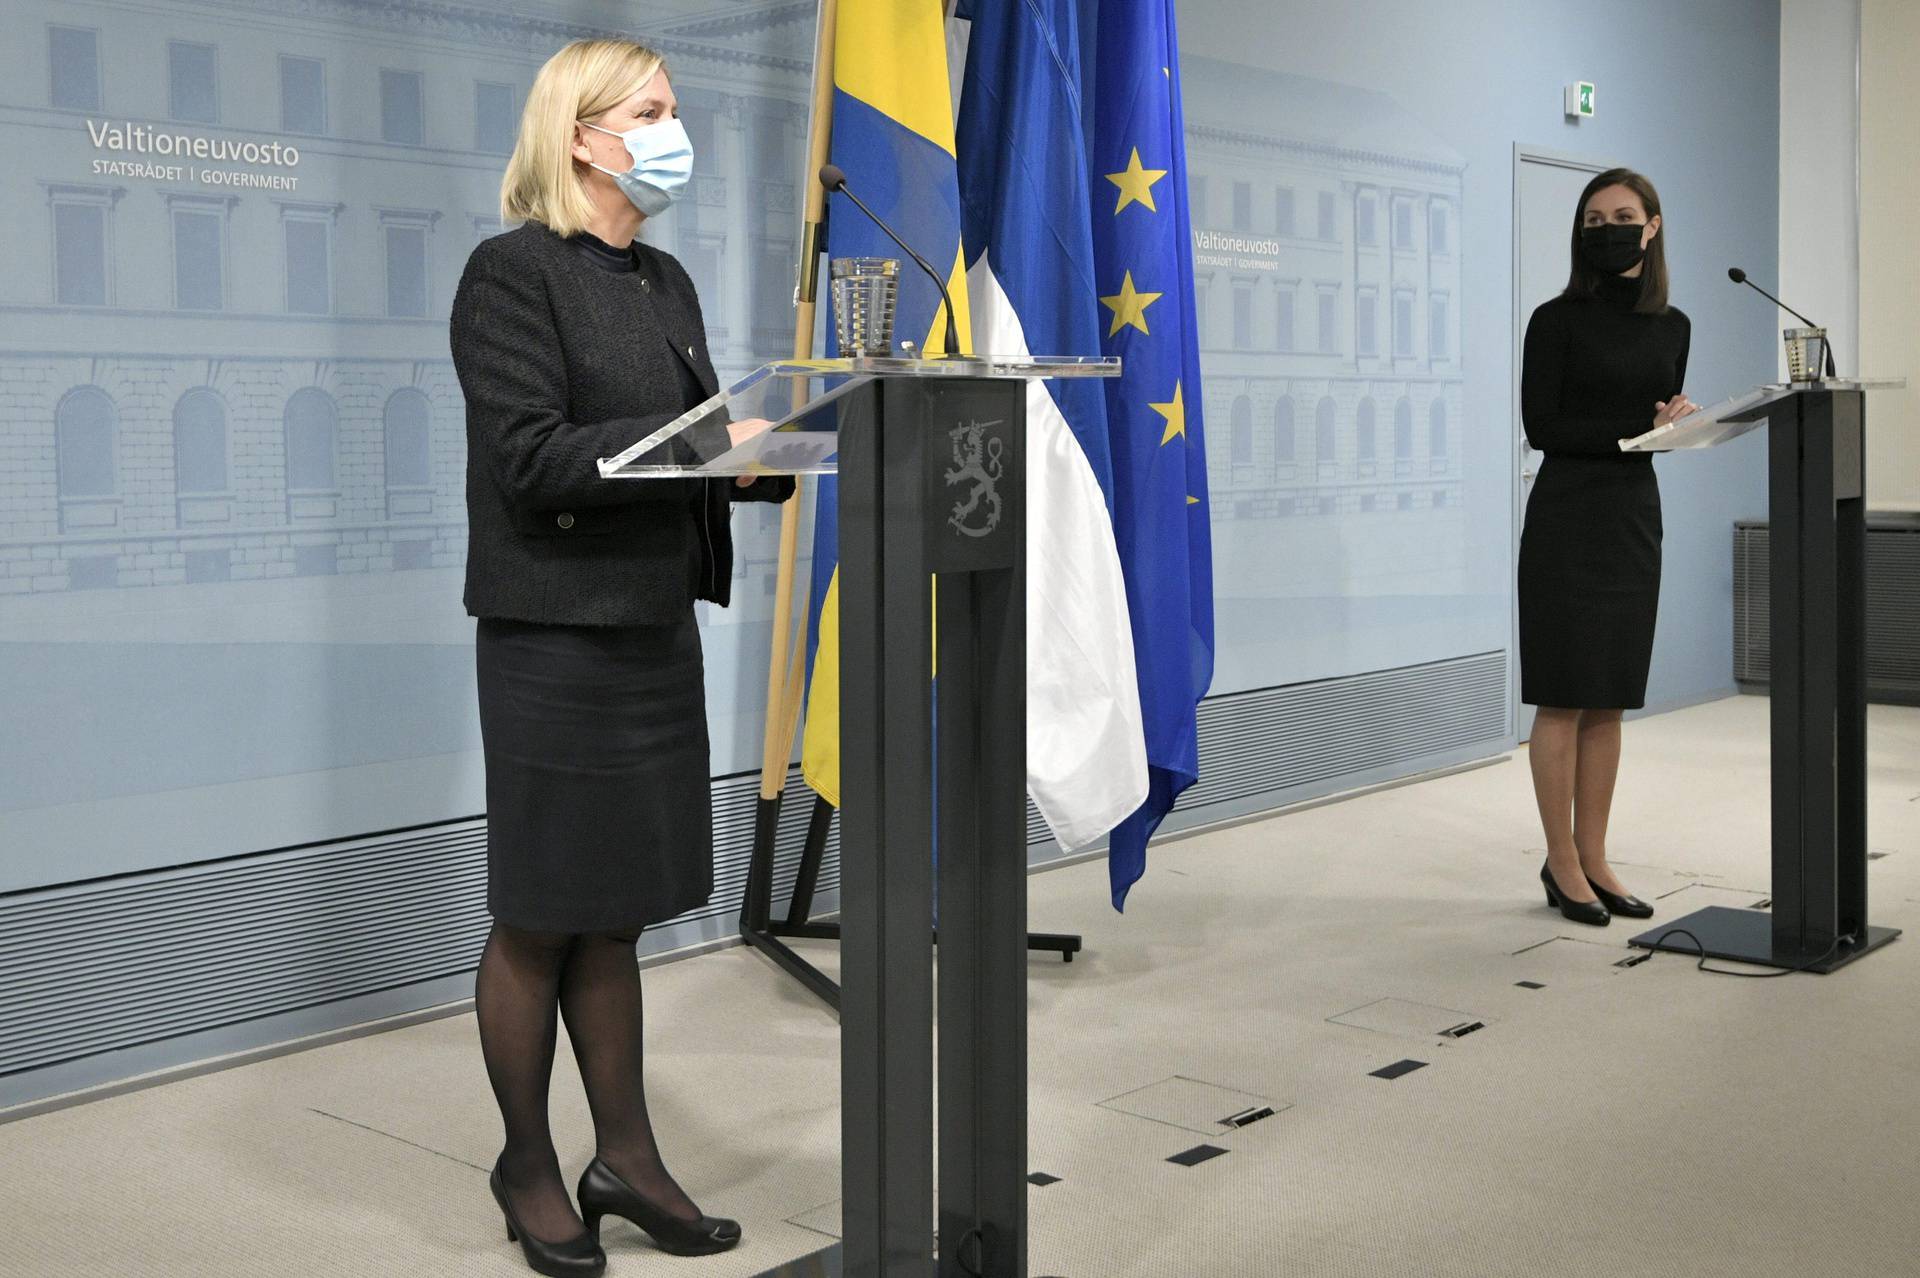 Sweden's Prime Minister visits Finland